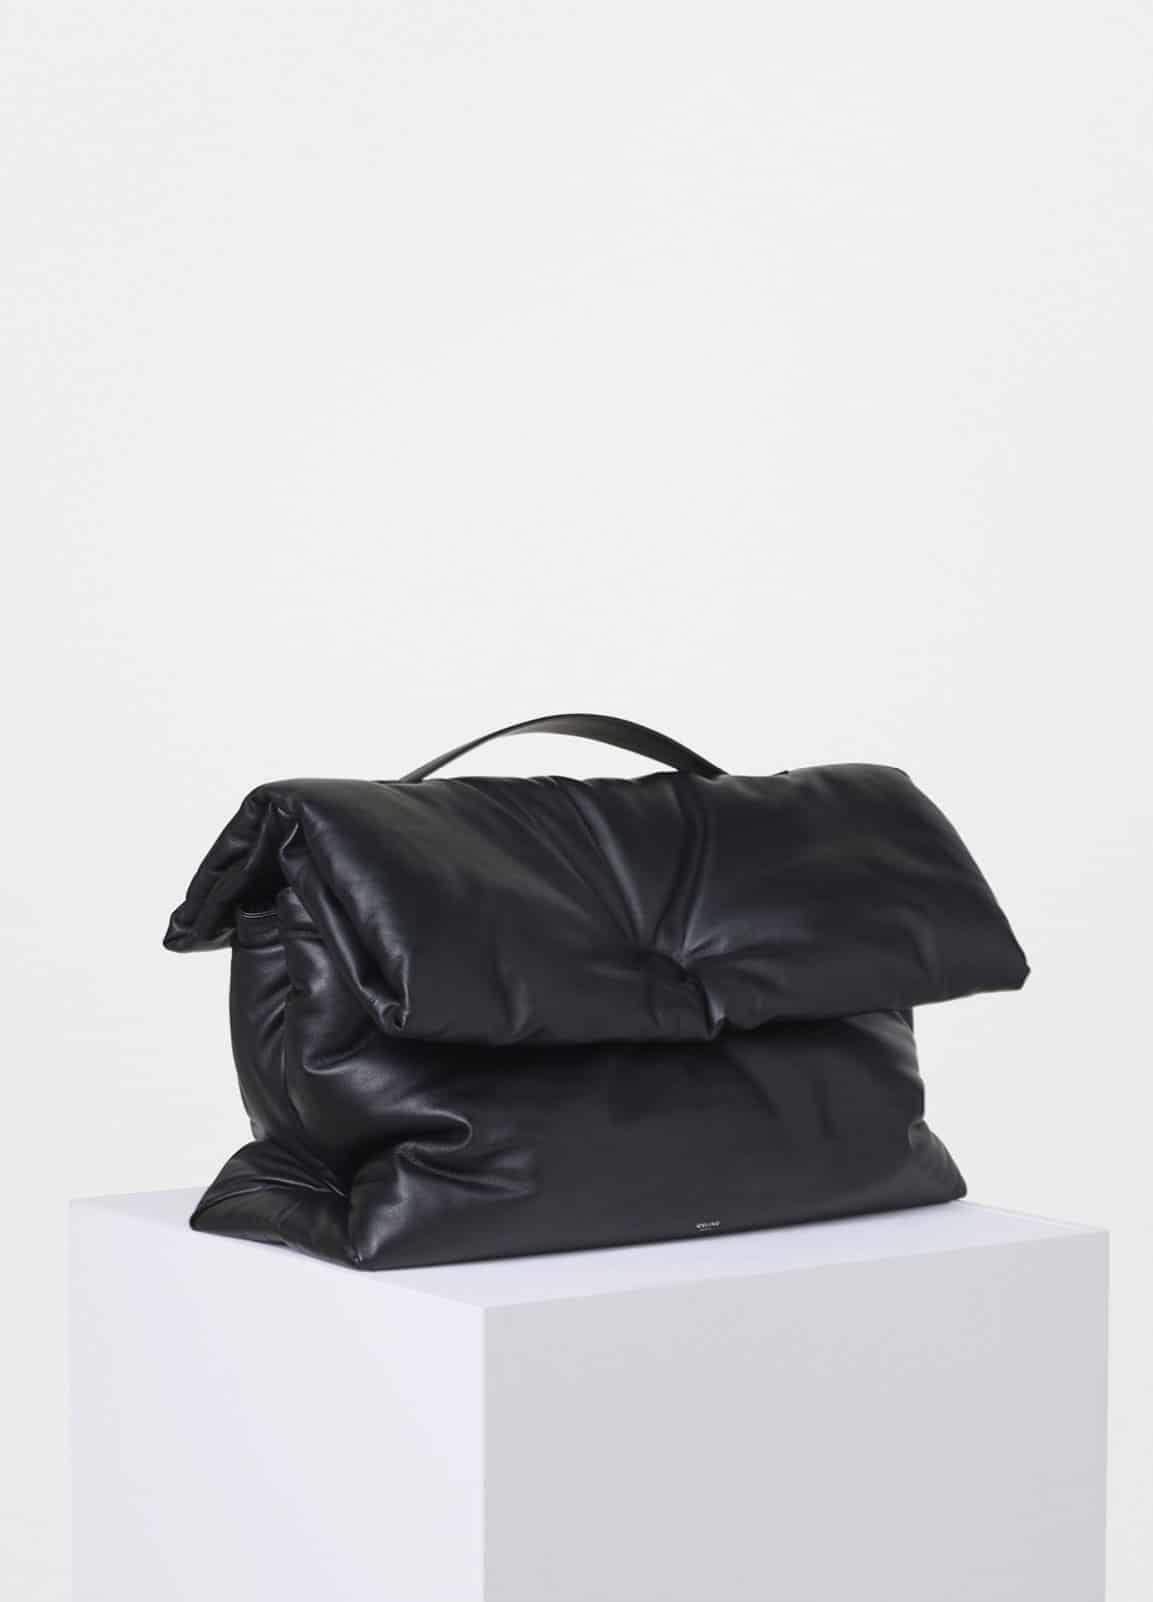 celine original bags - celine black cloth handbag classic